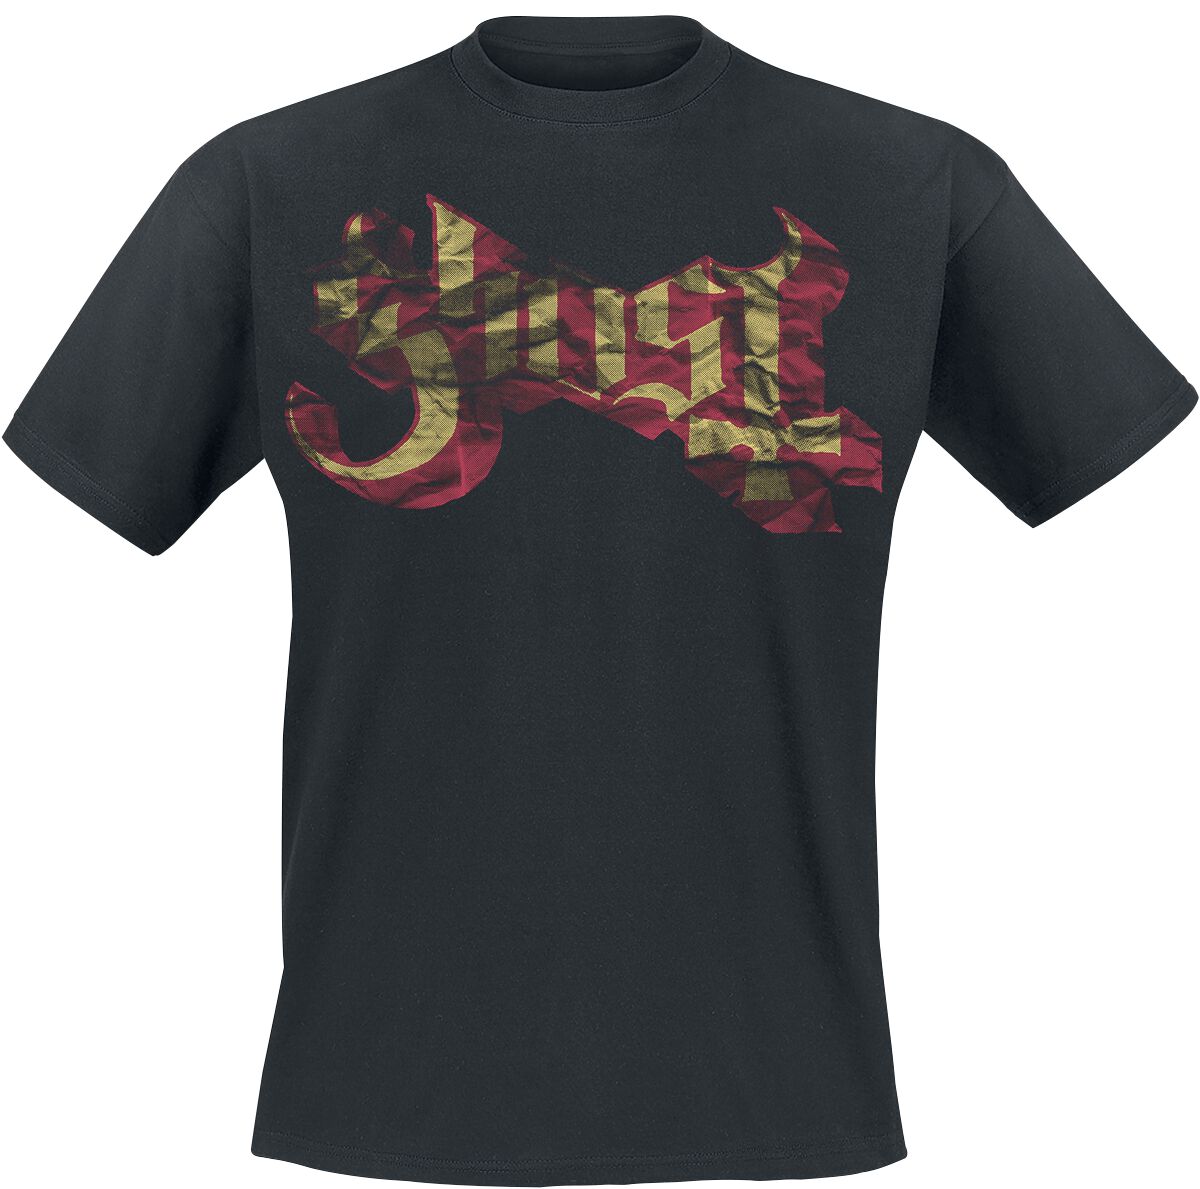 Ghost T-Shirt - Large Logo - S bis XXL - für Männer - Größe S - schwarz  - Lizenziertes Merchandise!